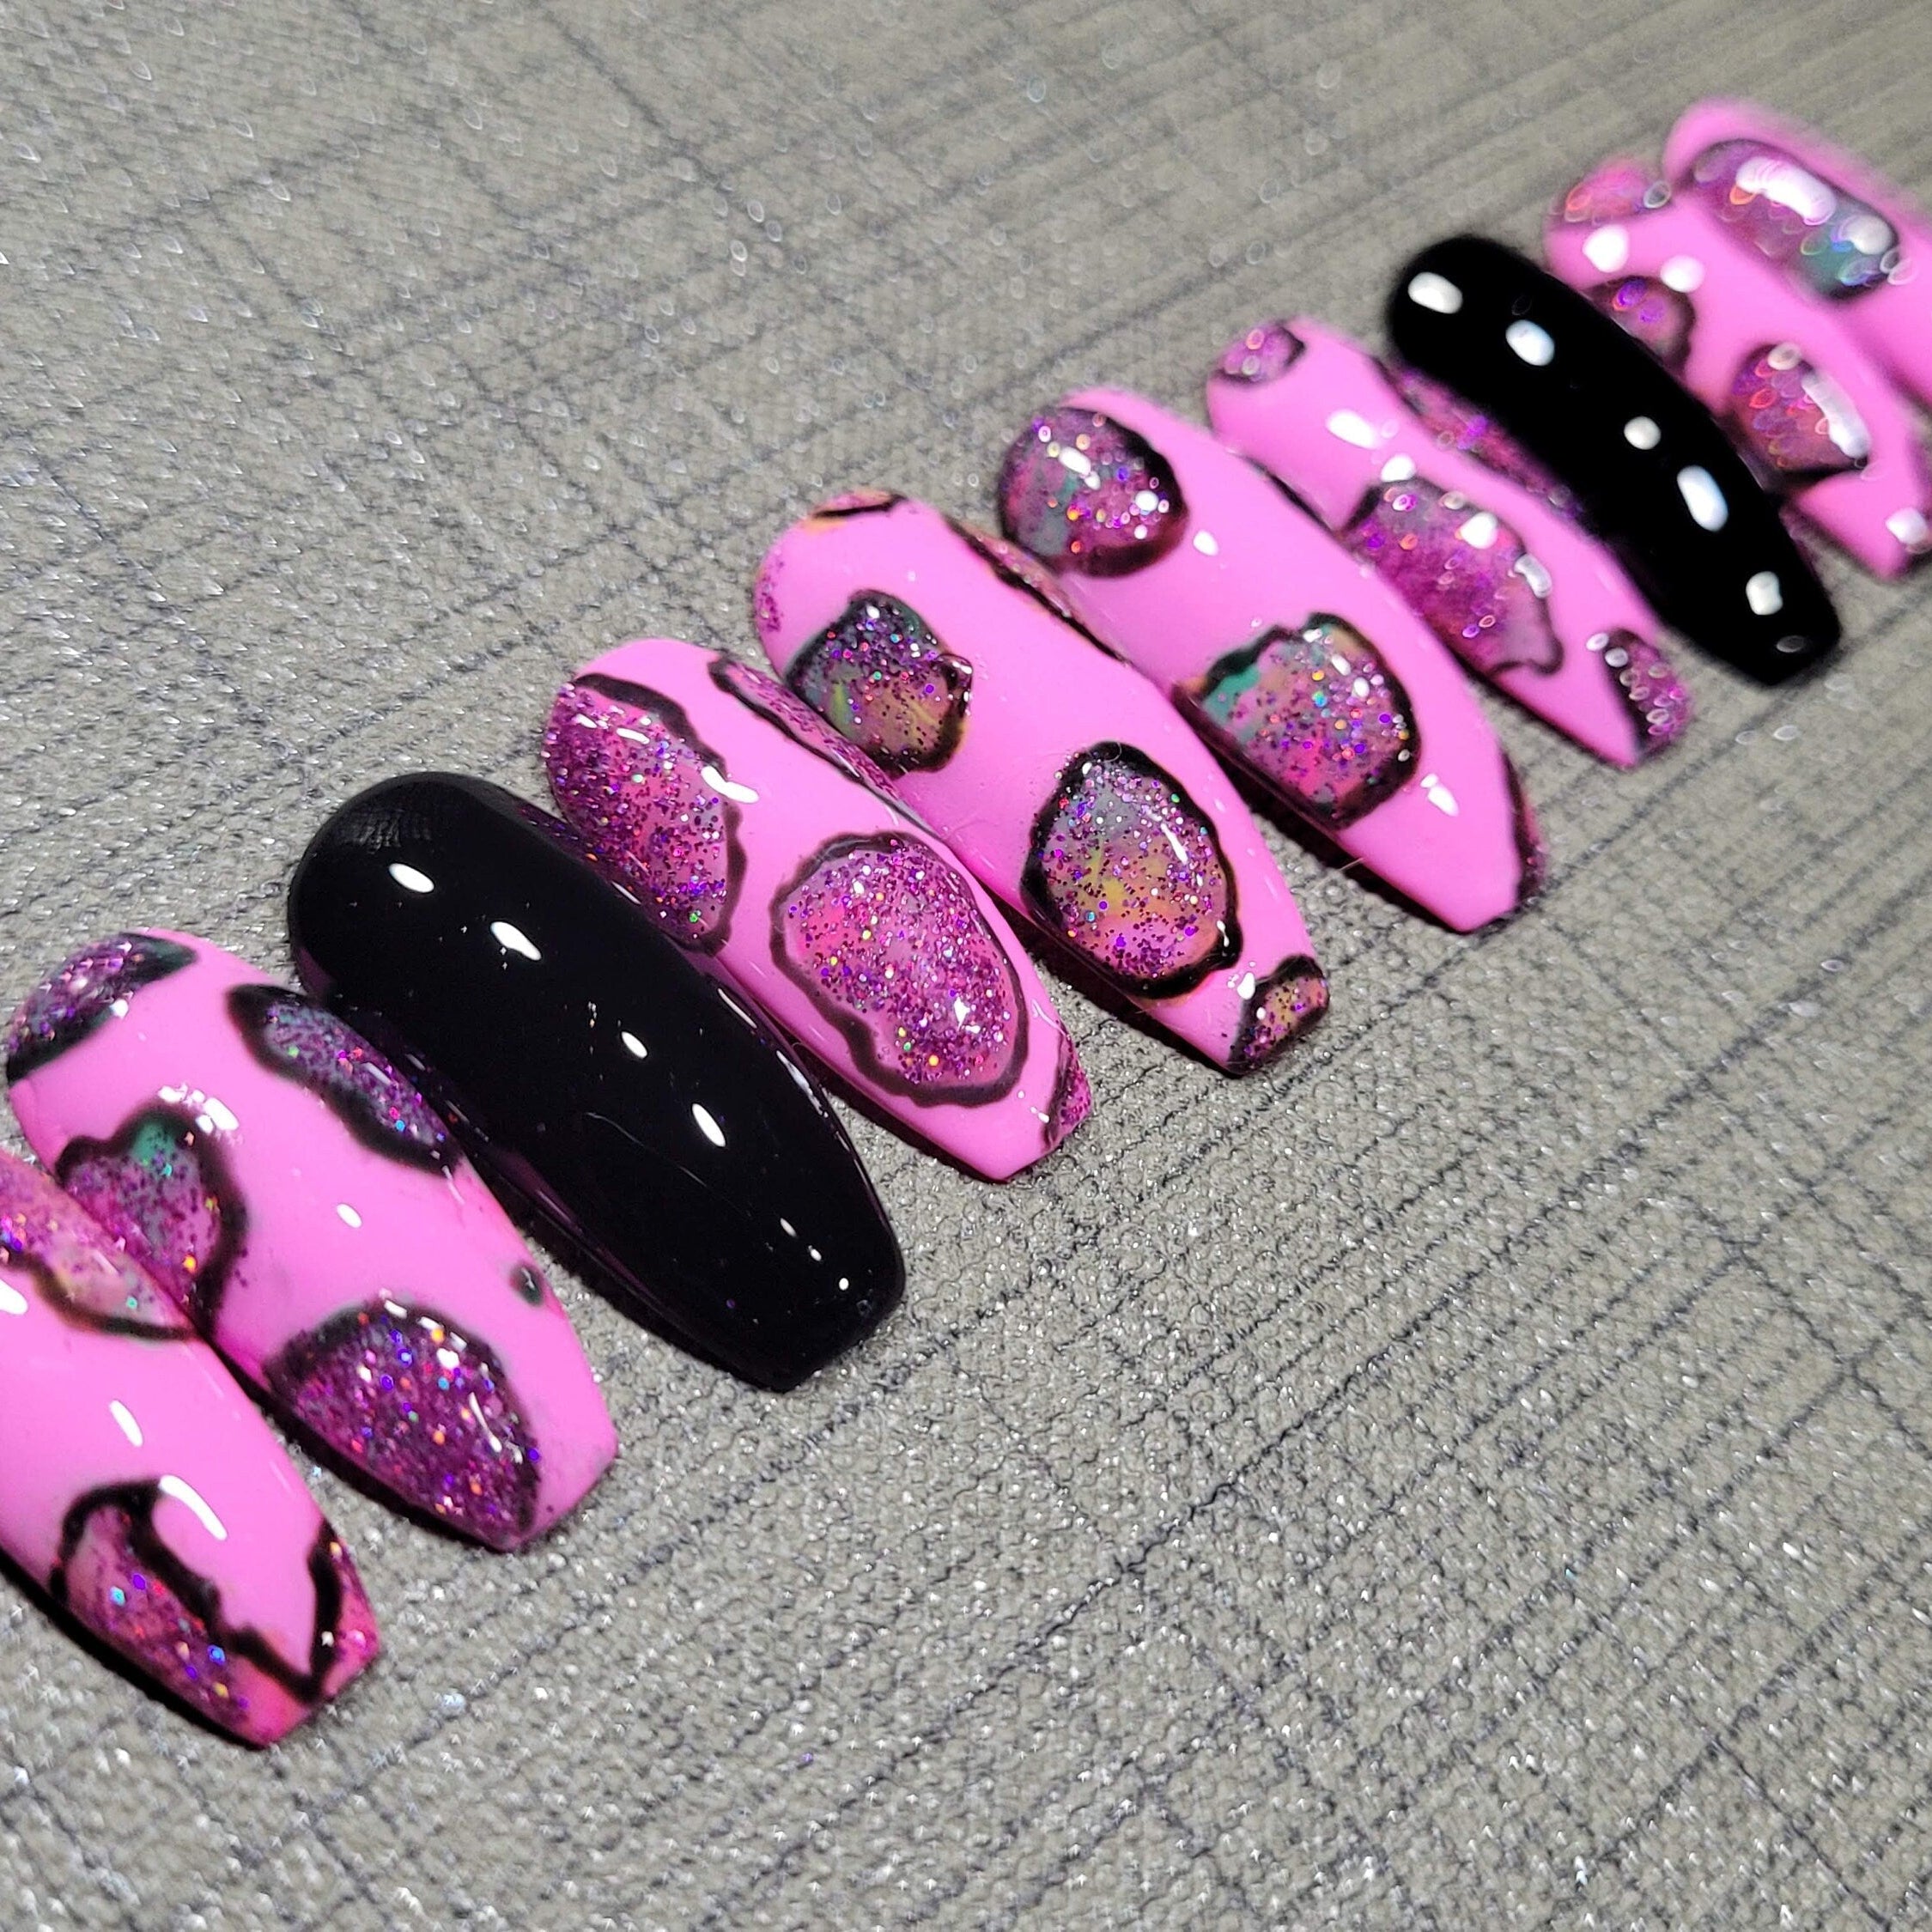 ピンクと黒の爪|豪華な爪|デザインのピンクの爪|ファンシーネイル|ブリングネイルズ|ネイルアート|爪を押す|偽の爪